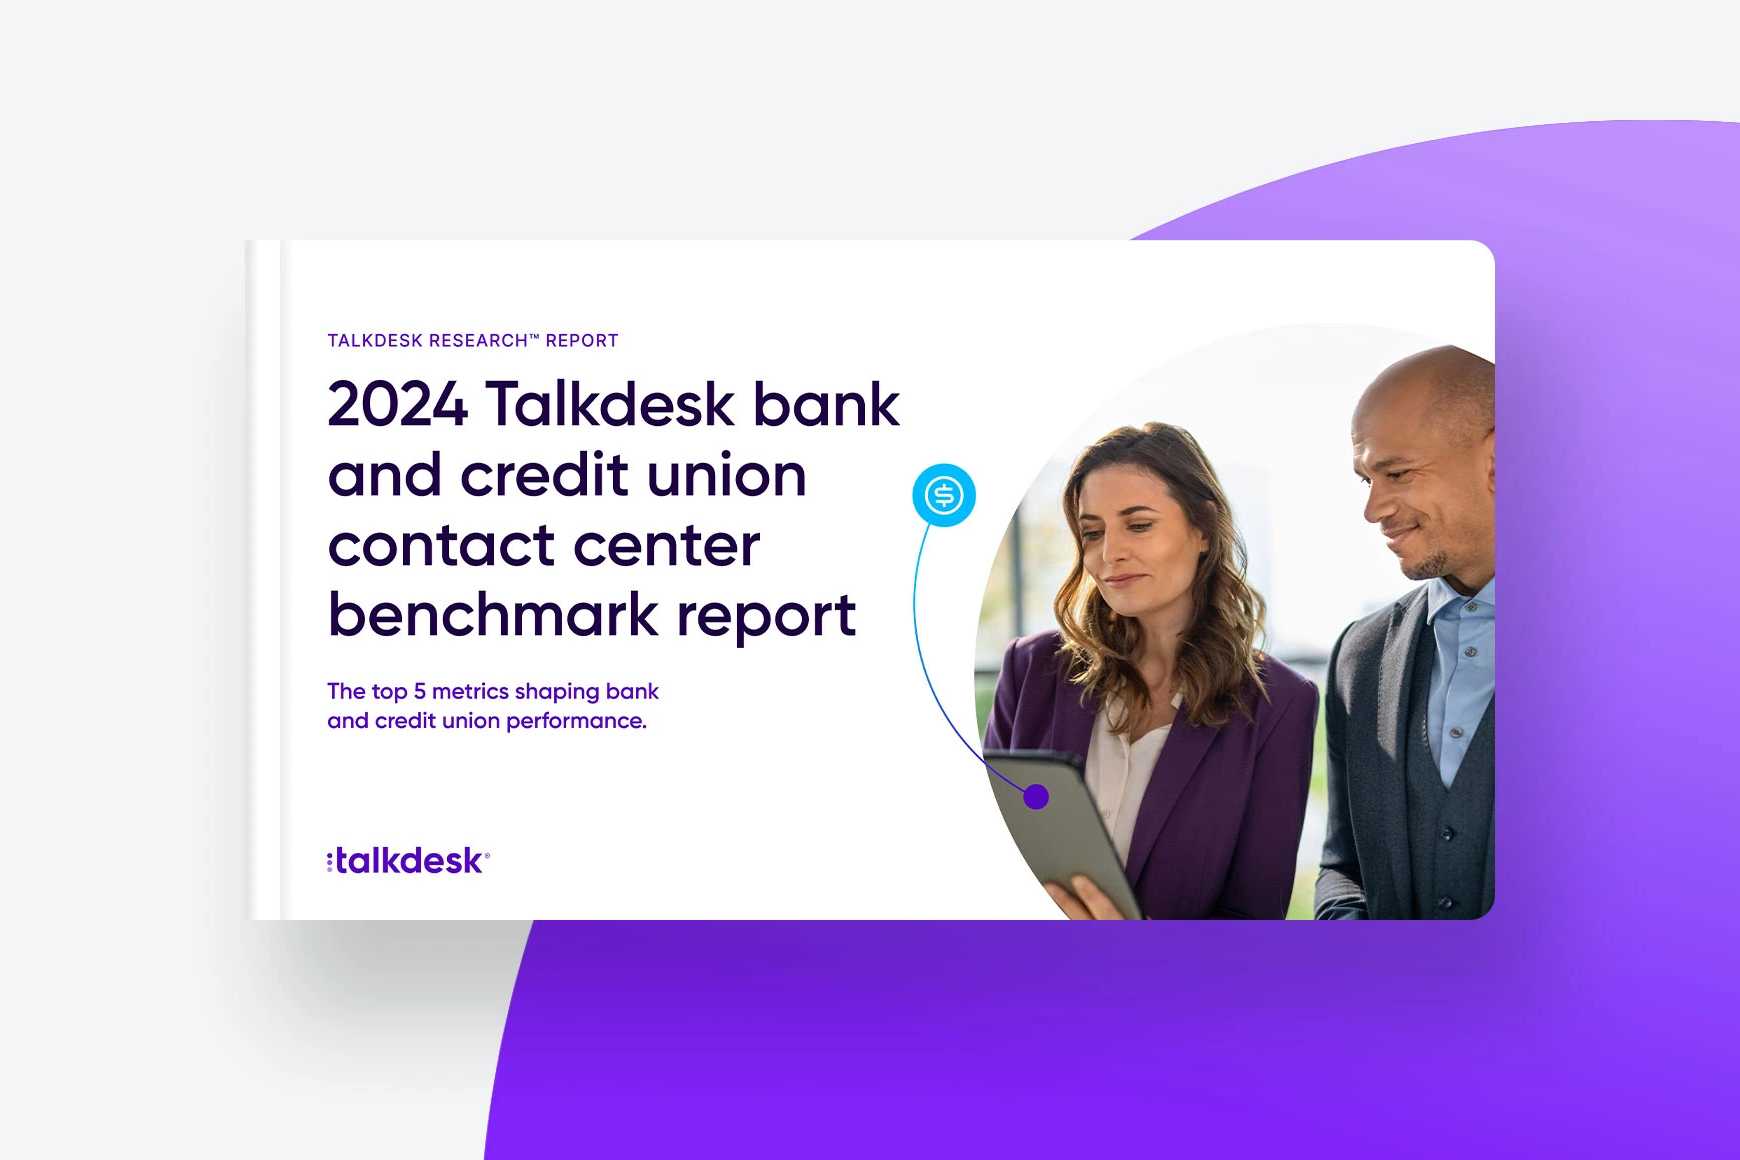 Relatório de Benchmark da Talkdesk para Contact Centers de Bancos e Cooperativas de Crédito em 2024